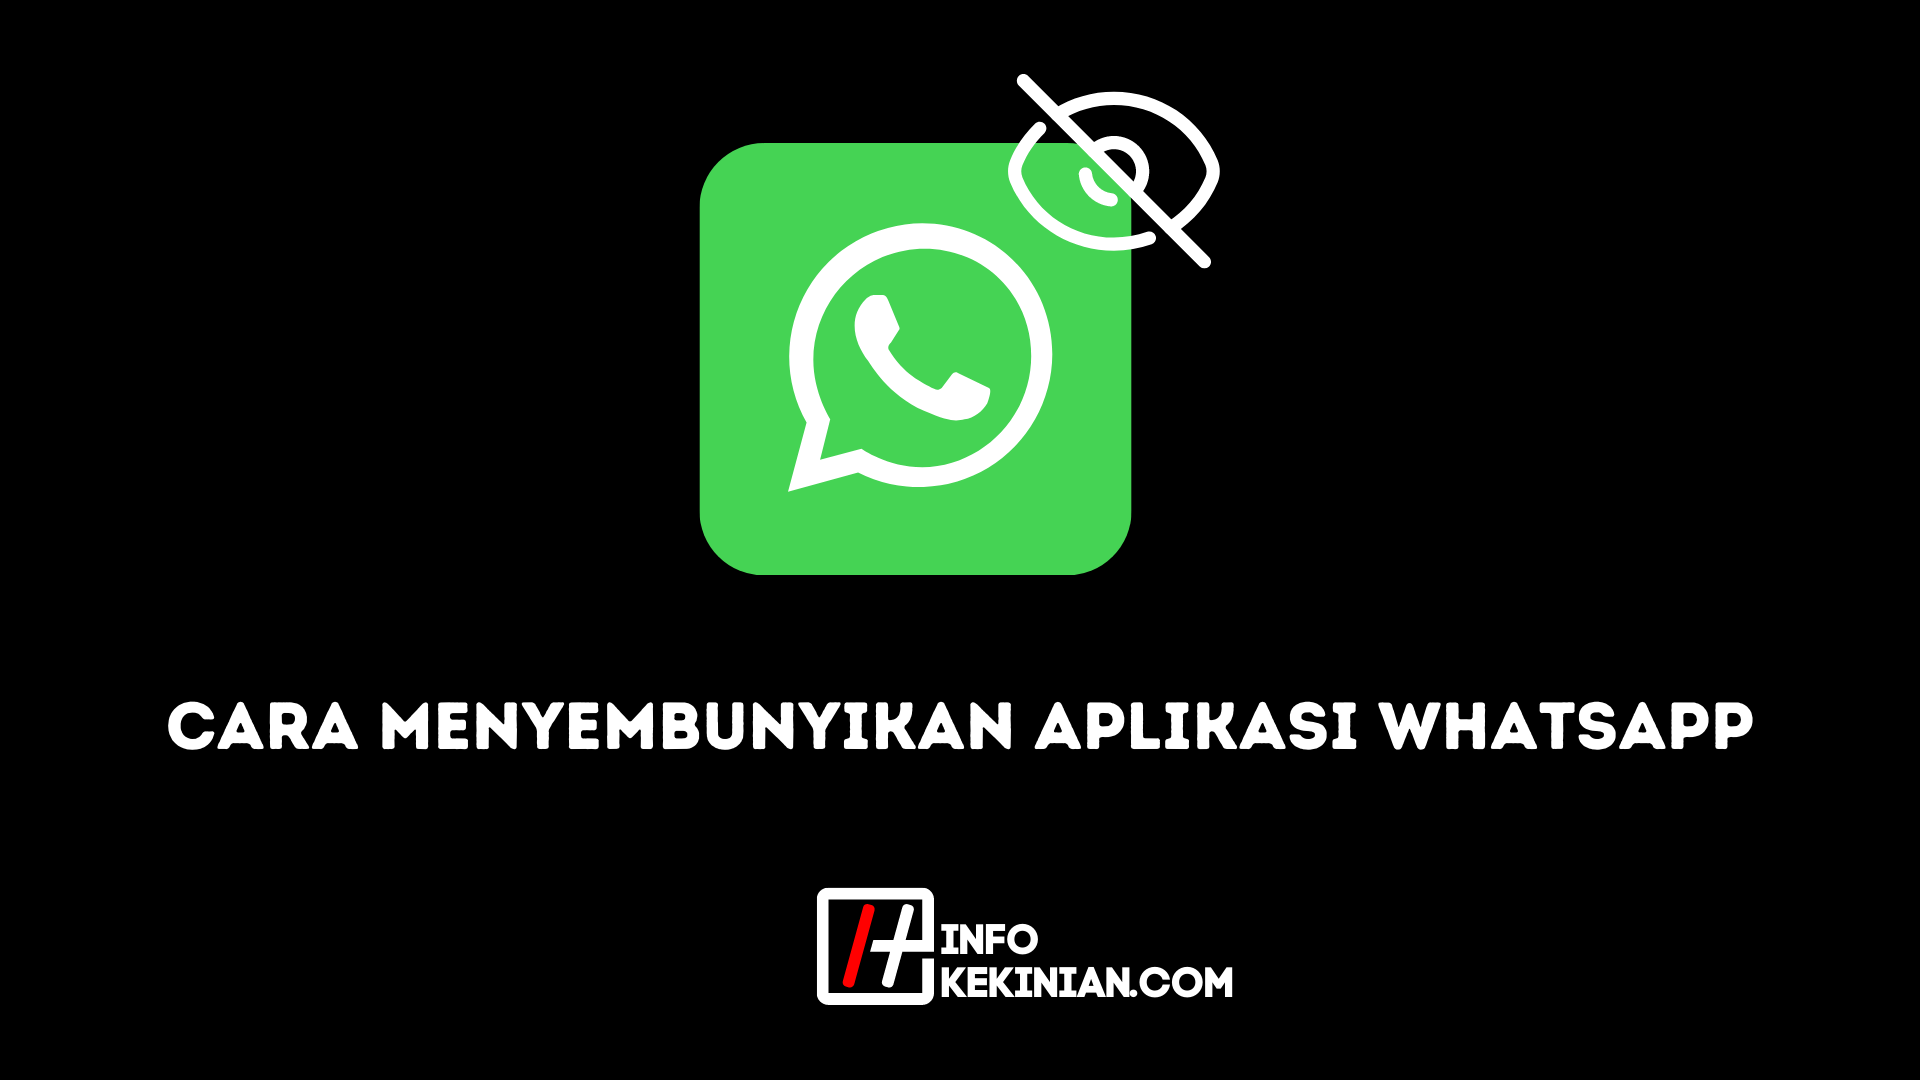 Cara Menyembunyikan Aplikasi WhatsApp